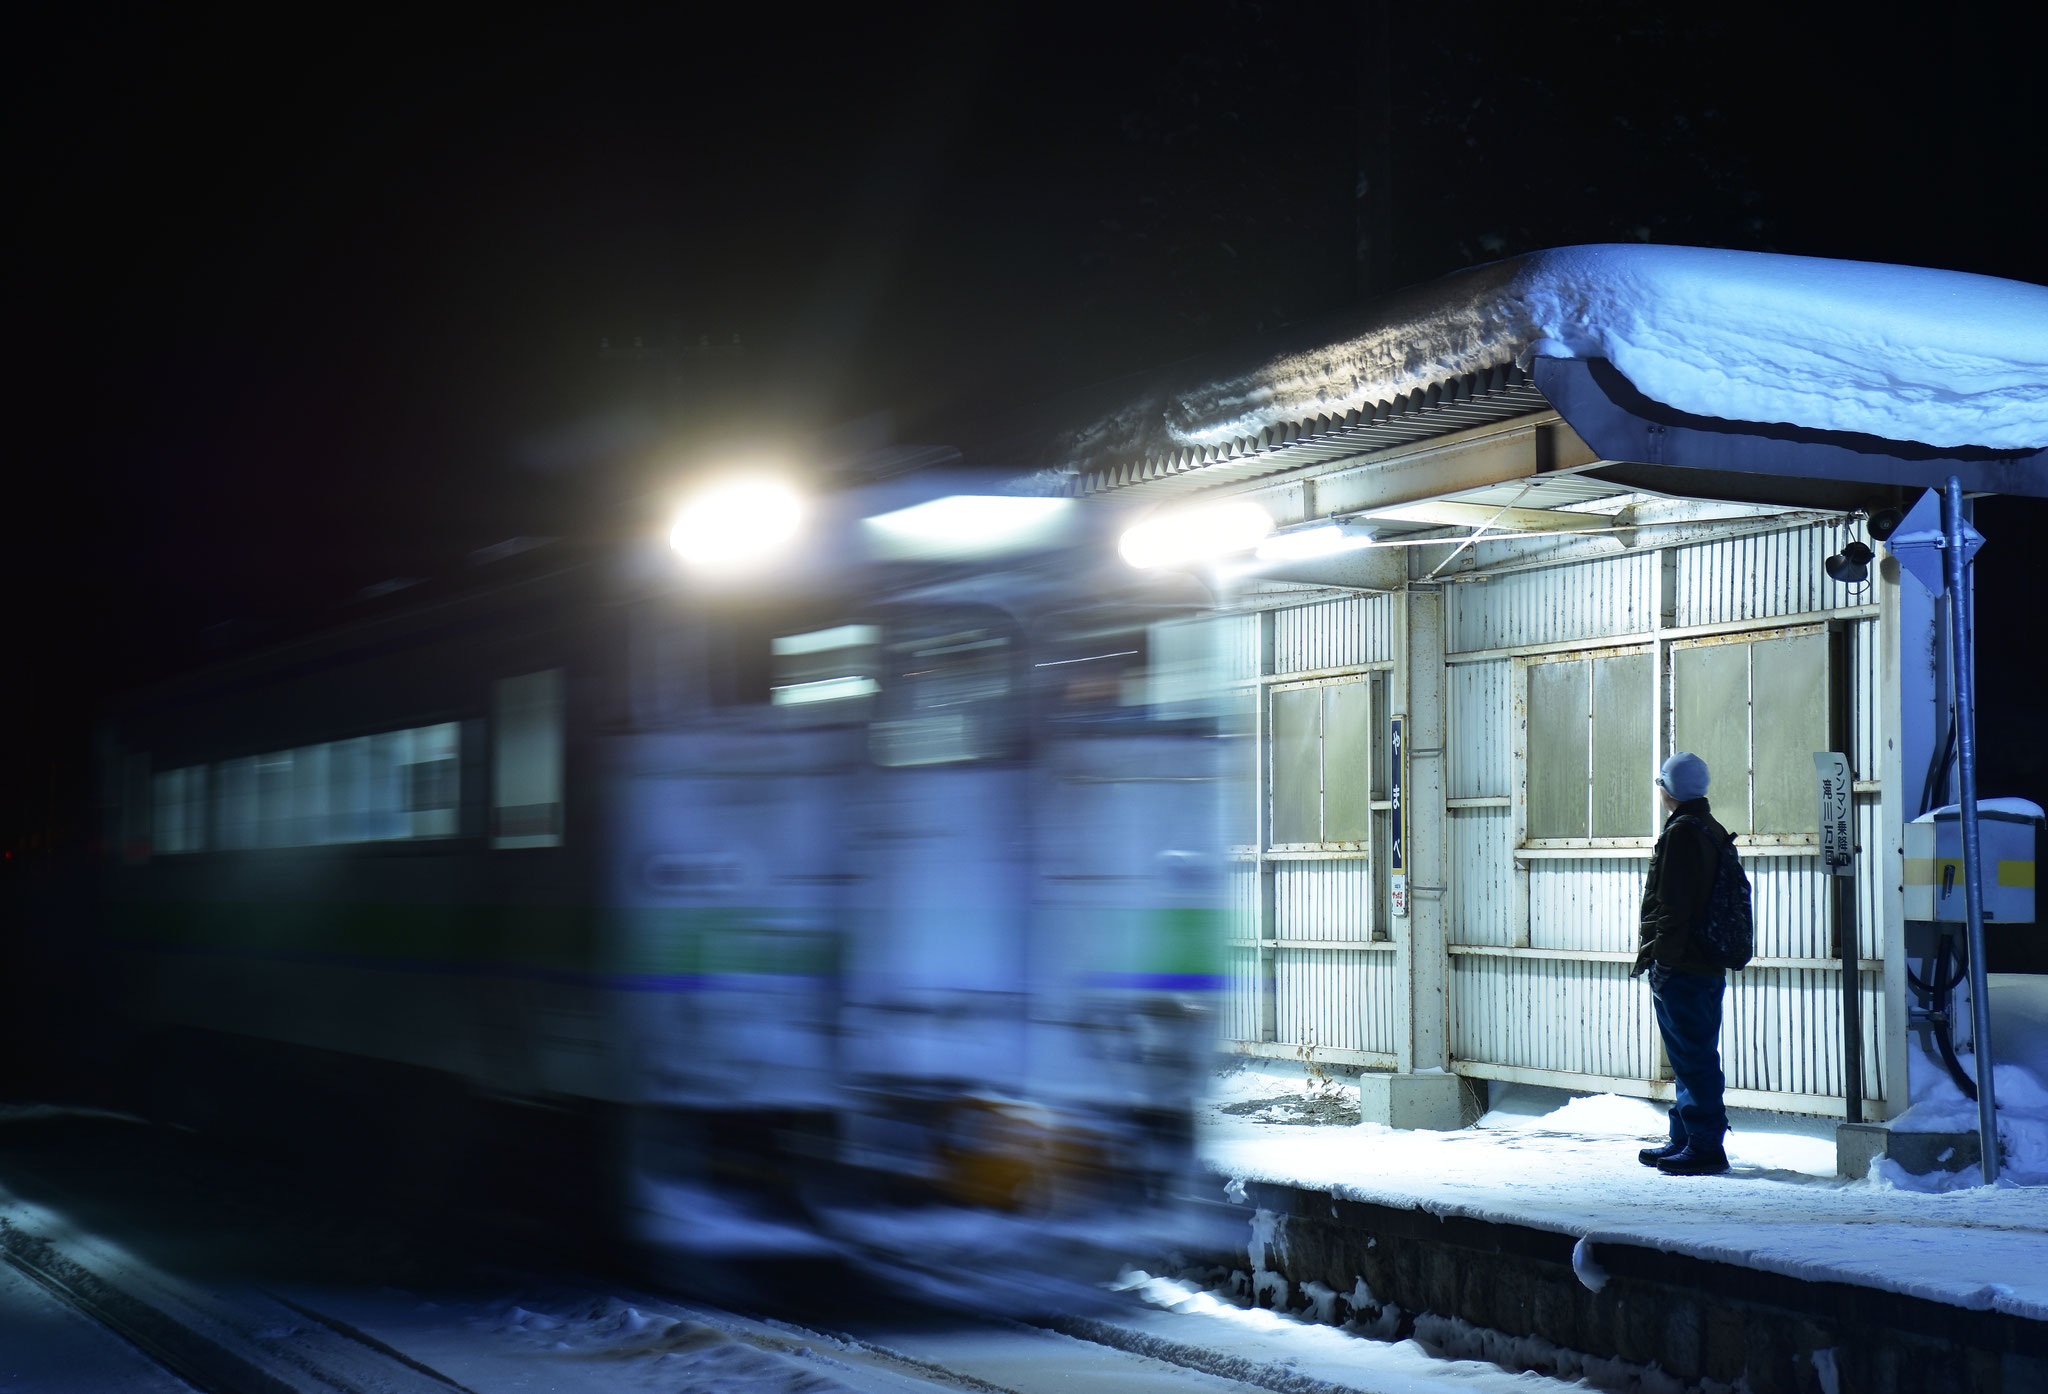  どんなに小さな駅でも時間になれば列車が来る。そしてそこには 乗客がいる。そんな当たり前のような日常を大切にしていきたい。北海道富良野市